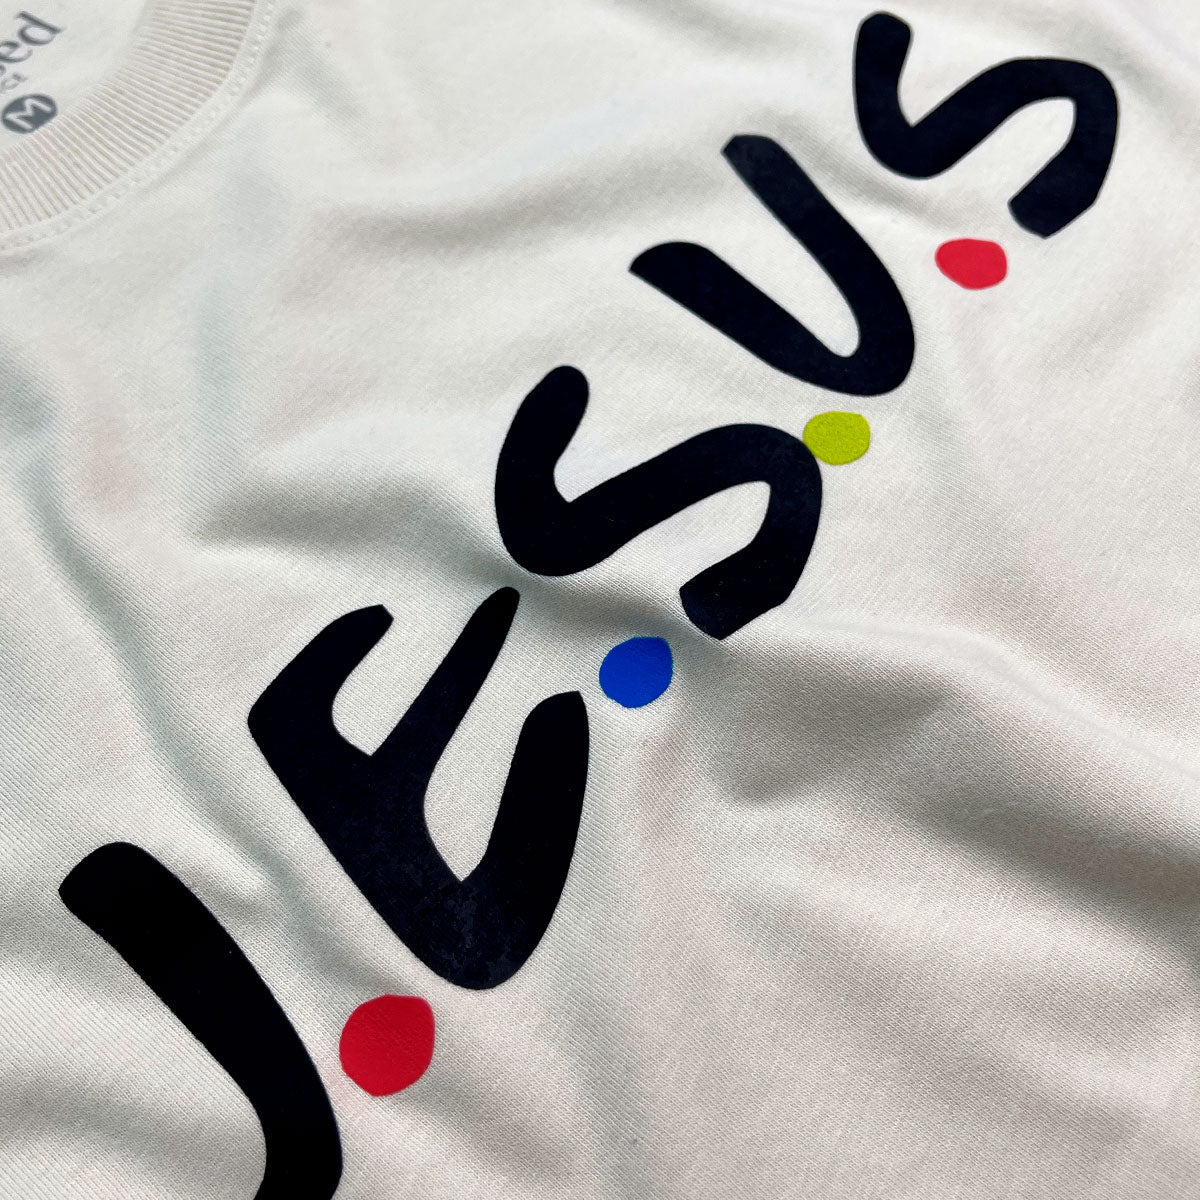 Camiseta Masculina Off White J.E.S.U.S